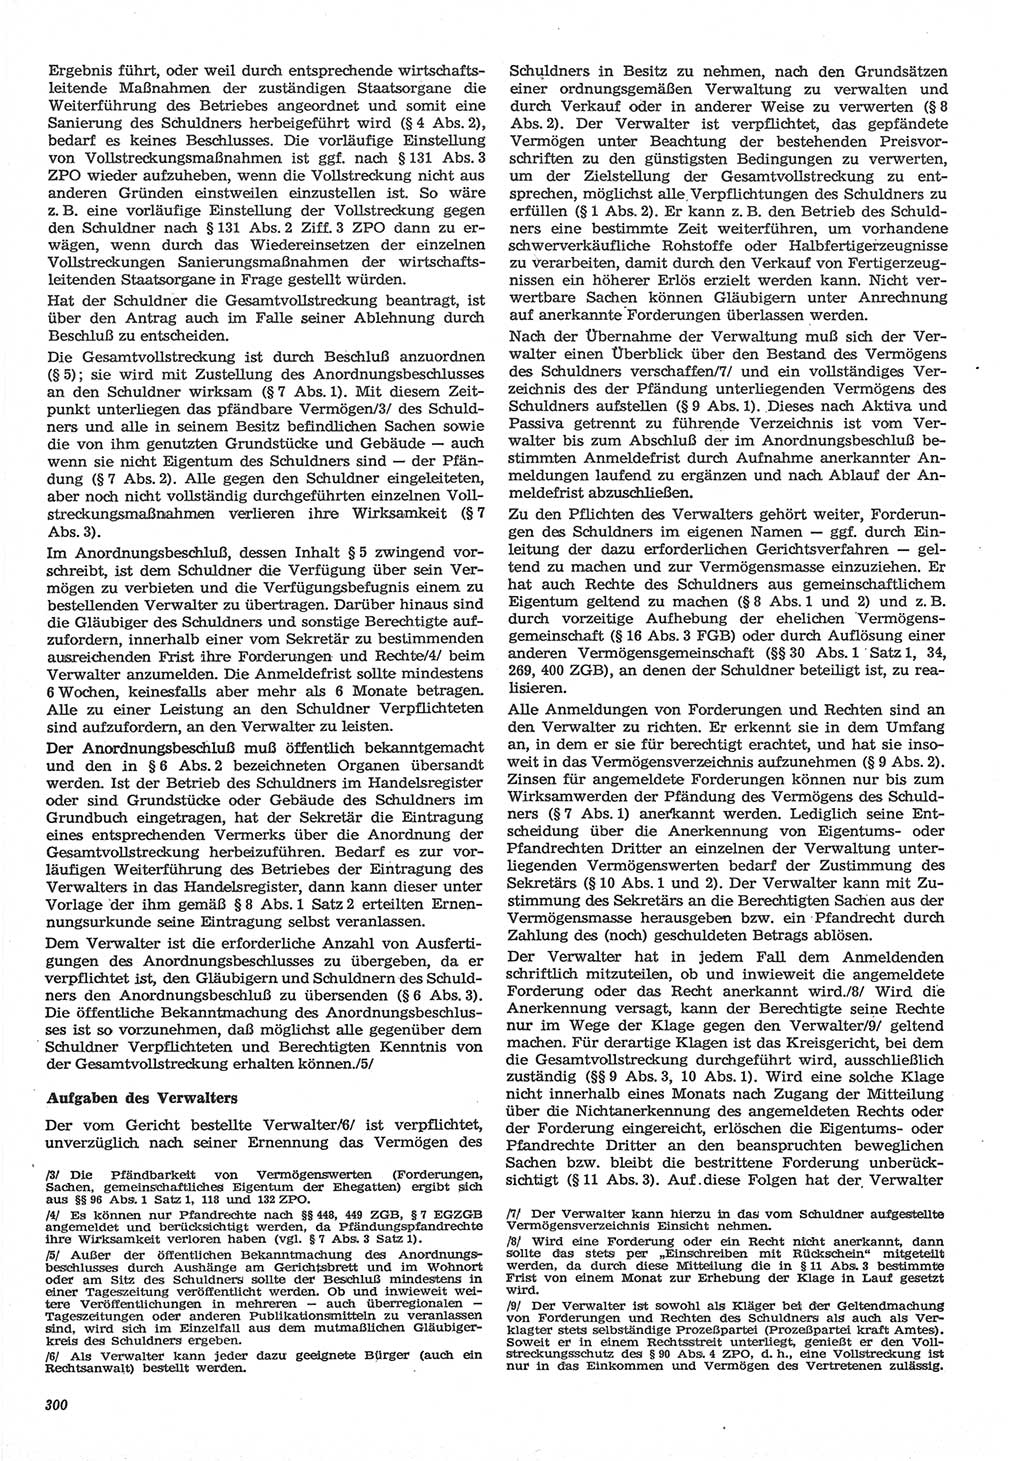 Neue Justiz (NJ), Zeitschrift für Recht und Rechtswissenschaft-Zeitschrift, sozialistisches Recht und Gesetzlichkeit, 31. Jahrgang 1977, Seite 300 (NJ DDR 1977, S. 300)